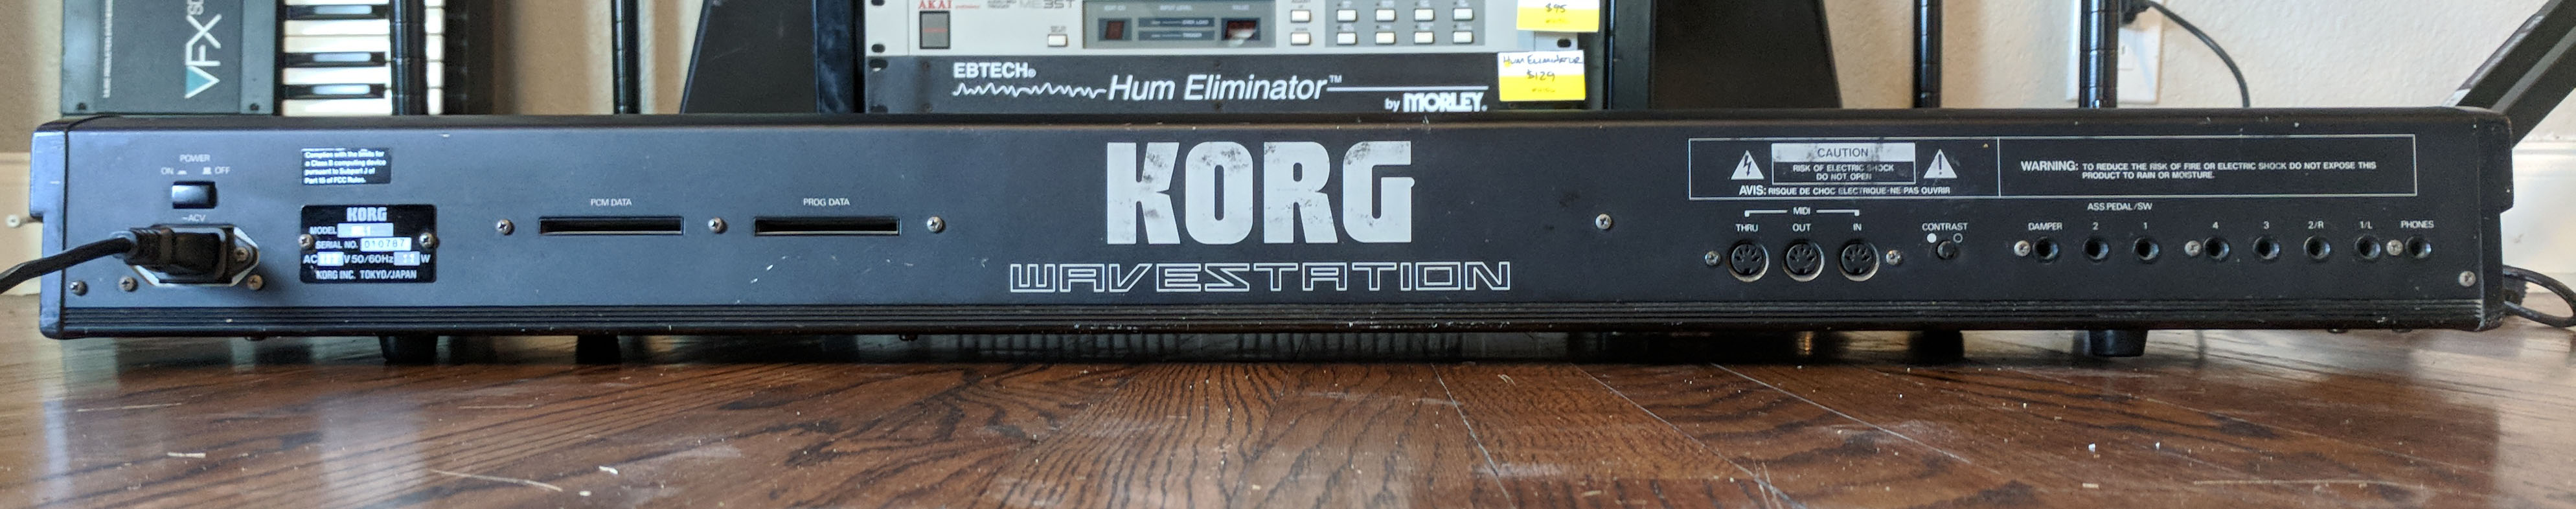 Korg Wavestation